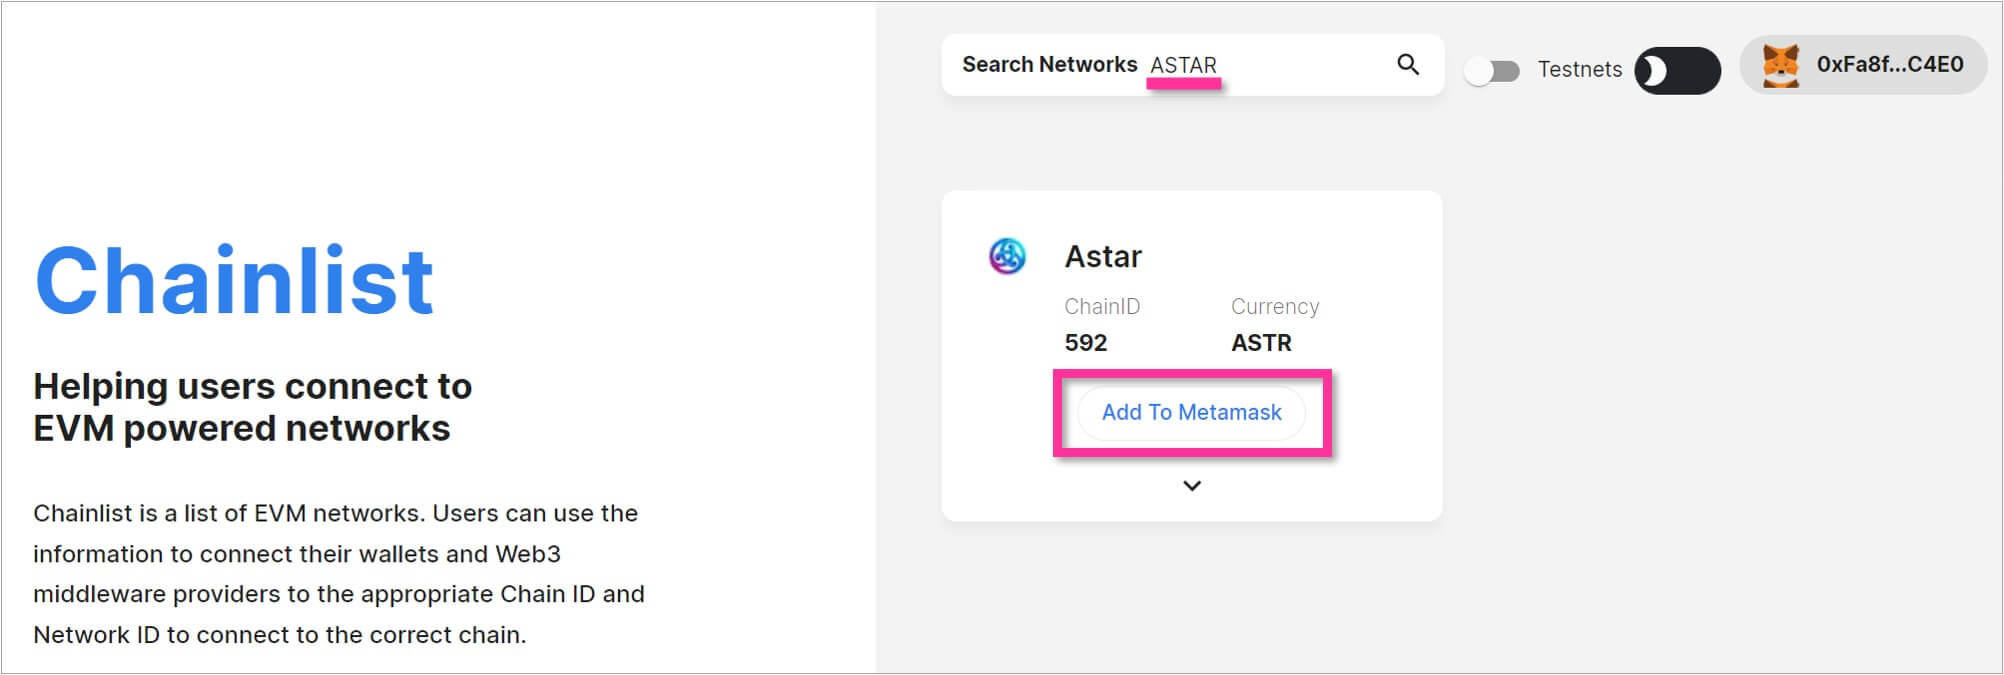 検索結果のネットワークを「Add To MetaMask」ボタンから追加